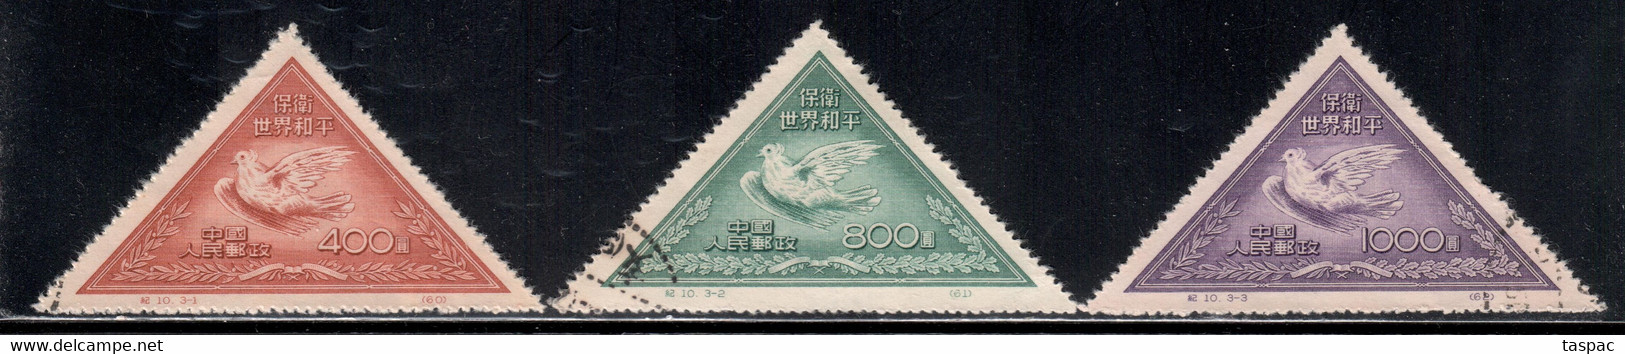 China P.R. 1951 Mi# 113-115 II Used - Reprints - Picasso Dove - Offizielle Neudrucke